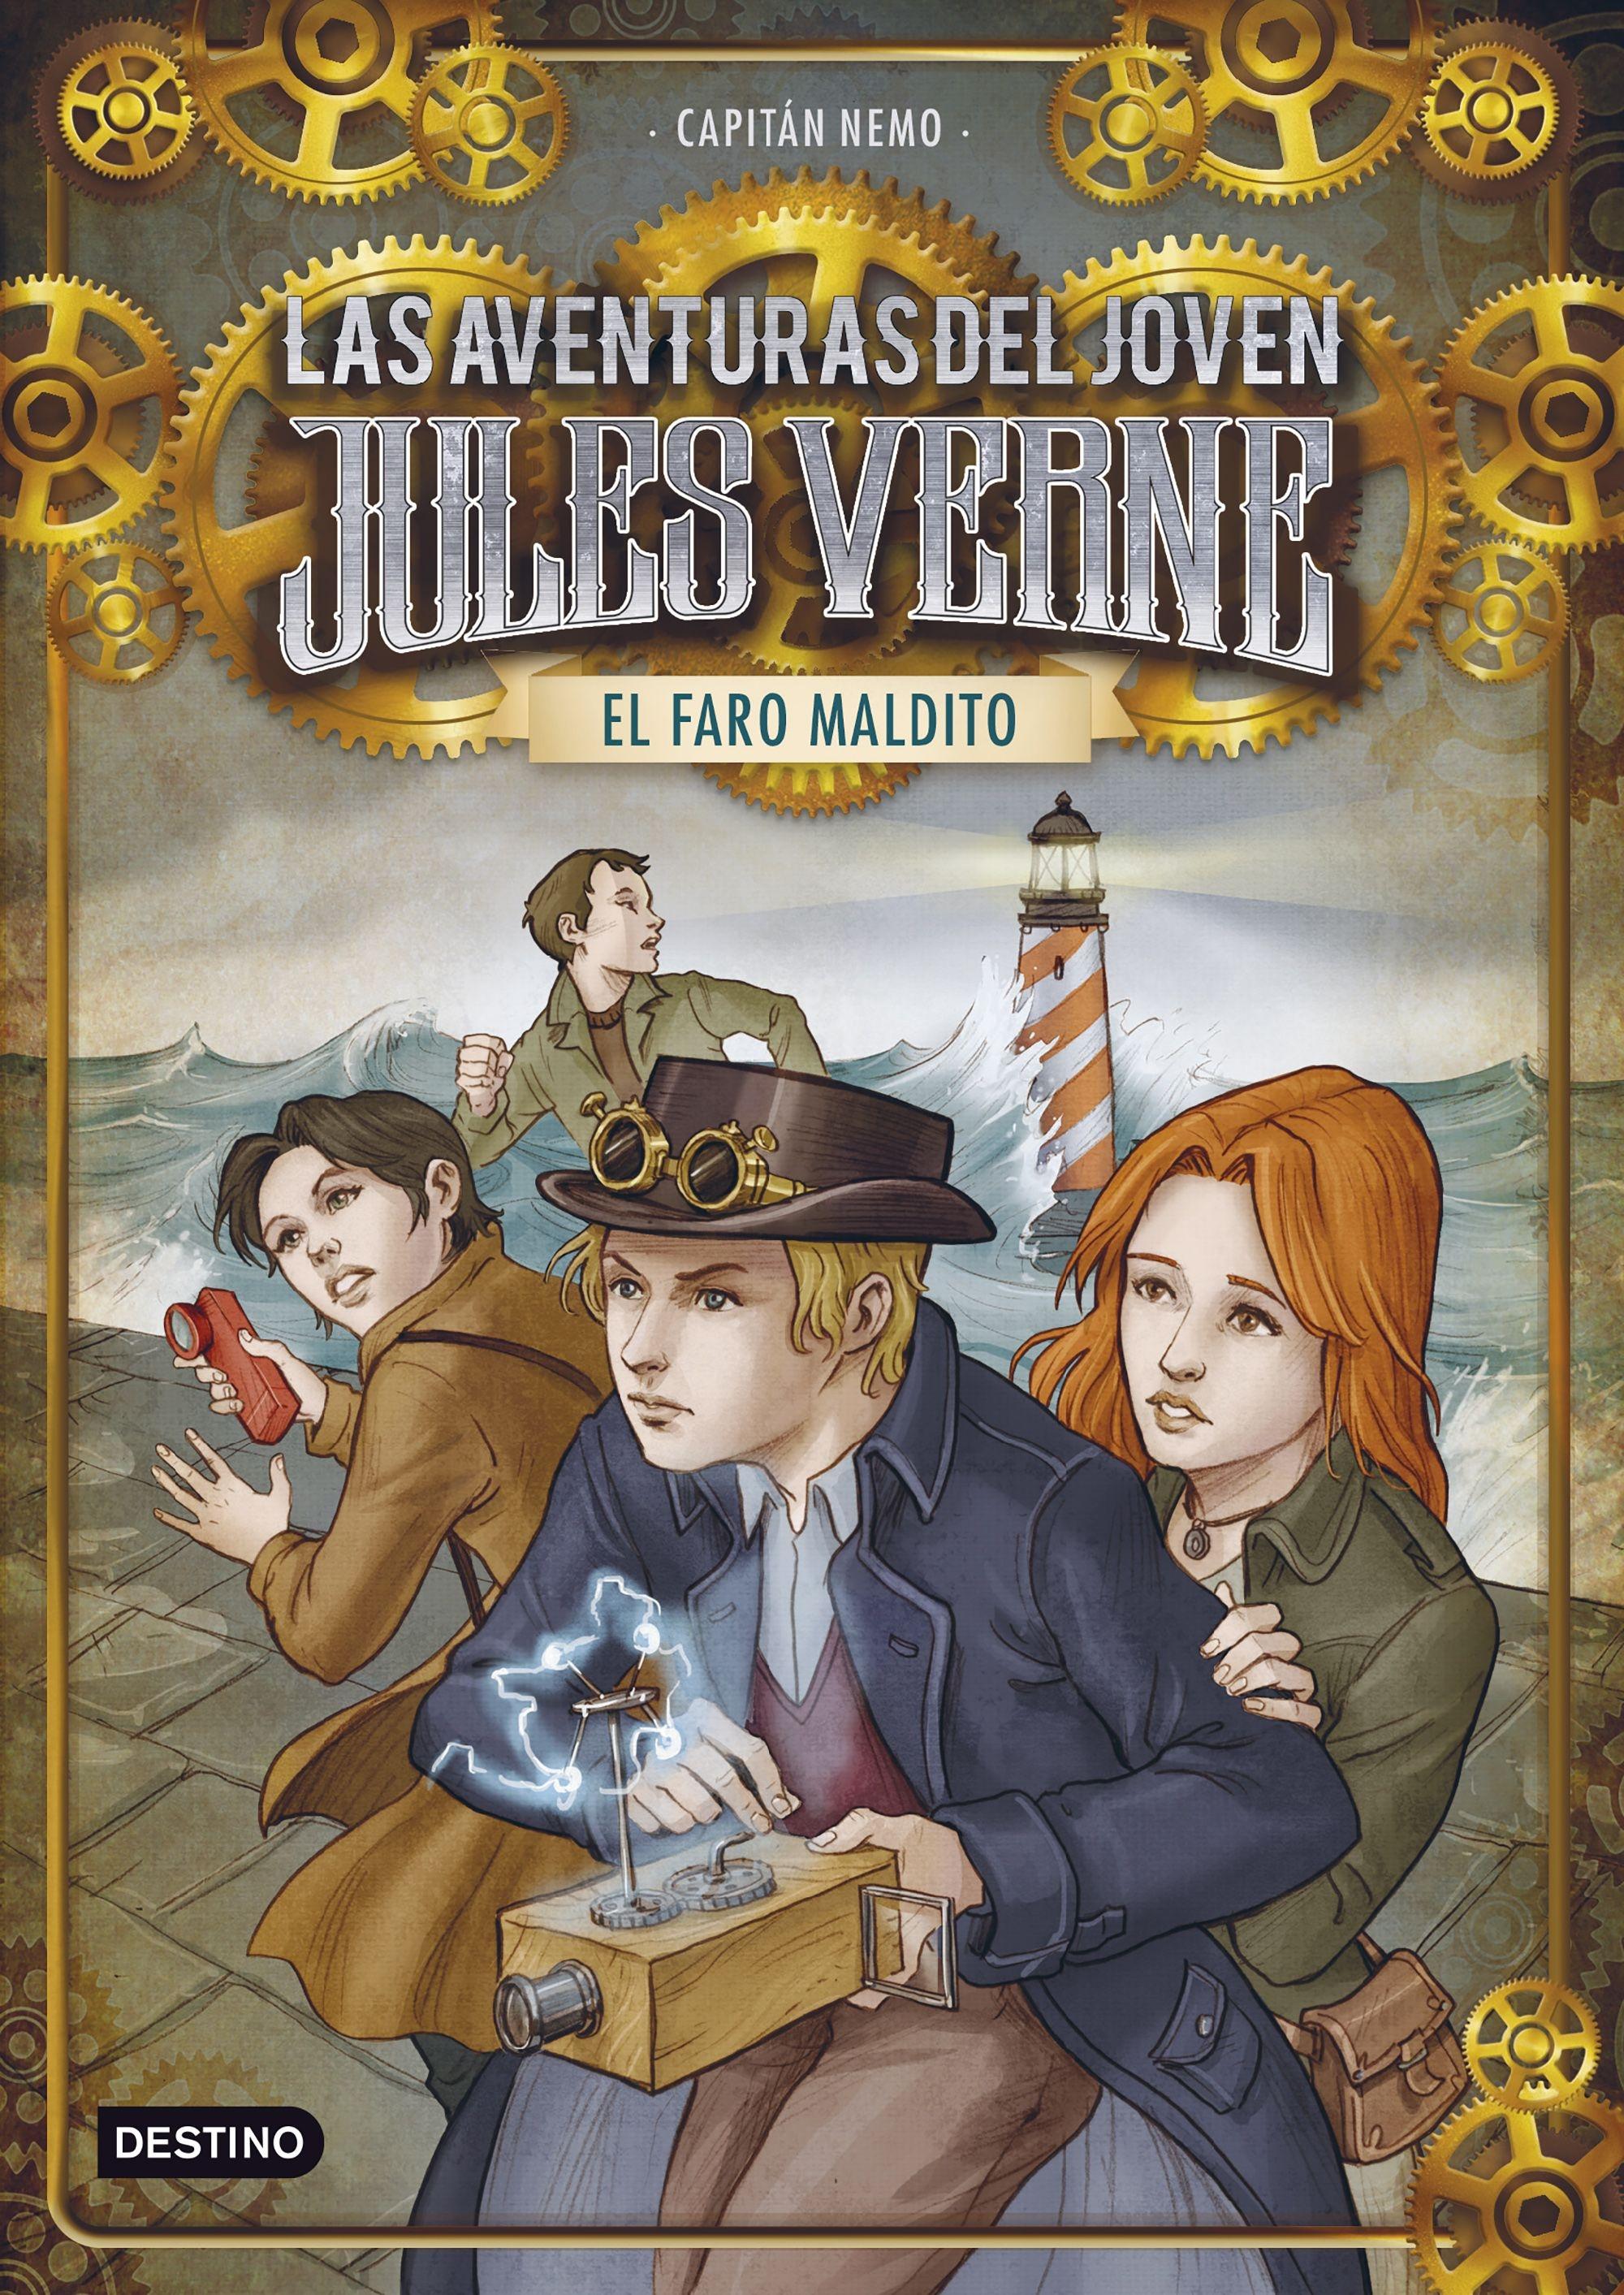 El Faro Maldito "Las Aventuras del Joven Jules Verne 2"